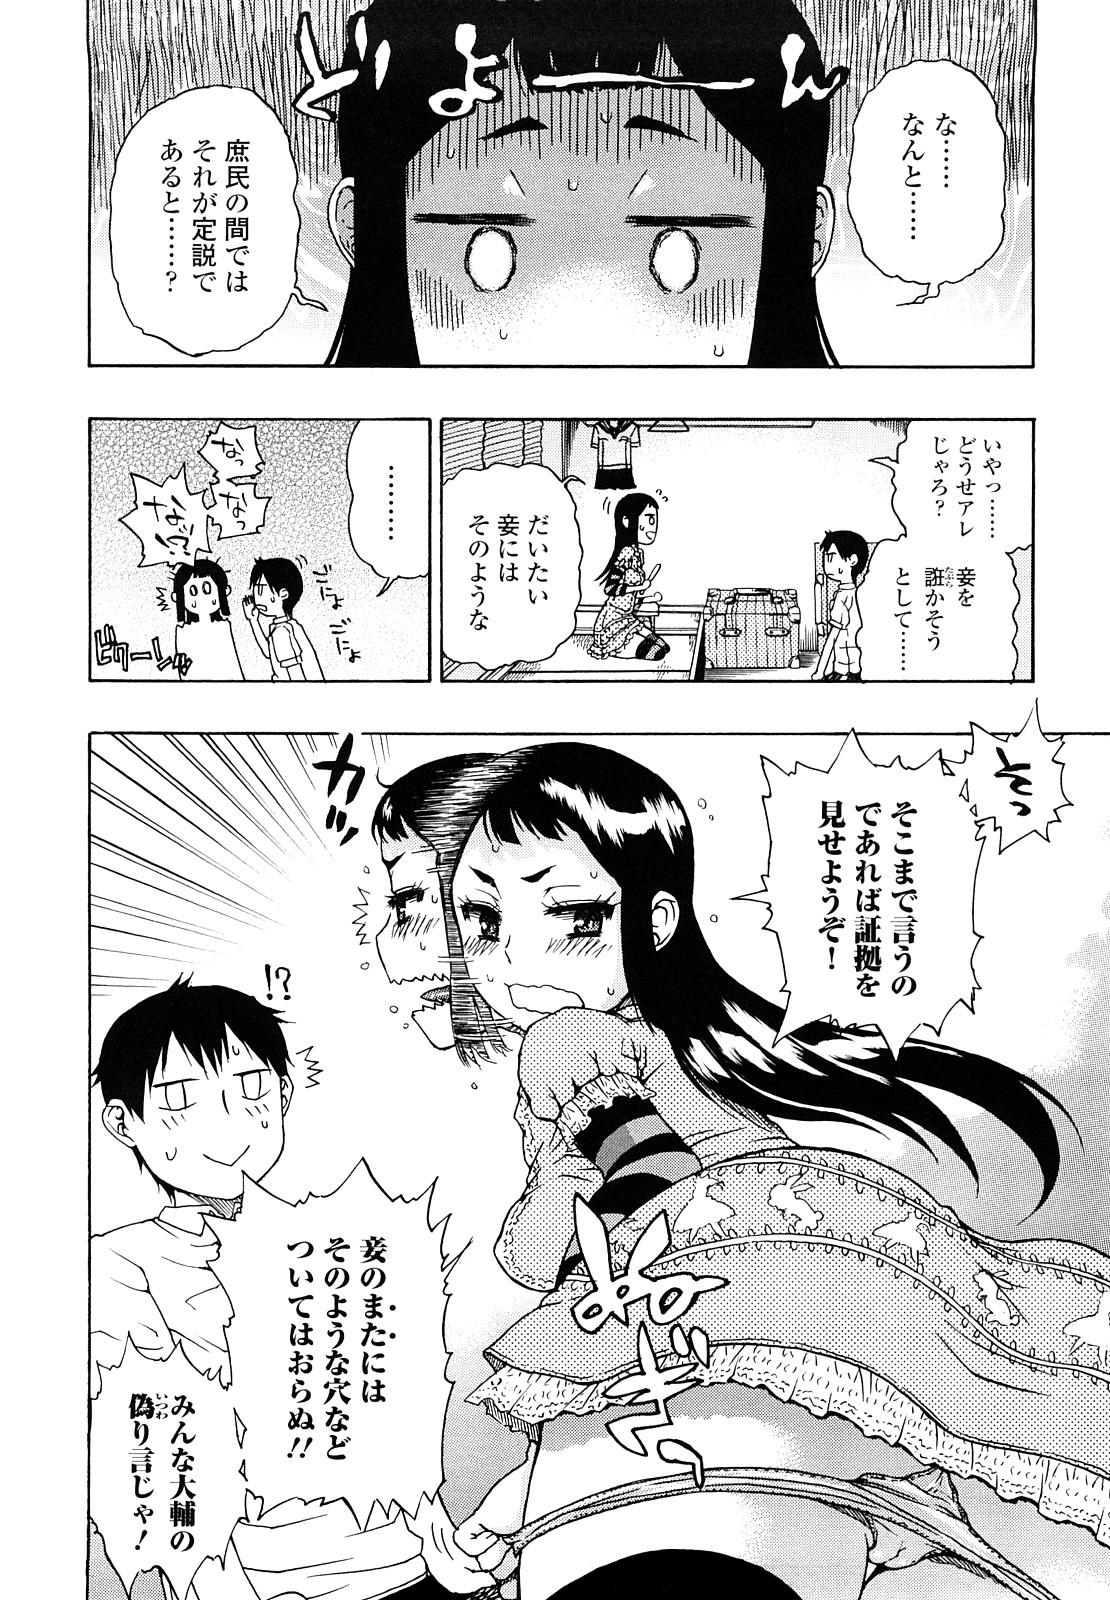 Sofa Daisuke-kun no Hijitsuzai Bishoujo Plus Amature Allure - Page 10